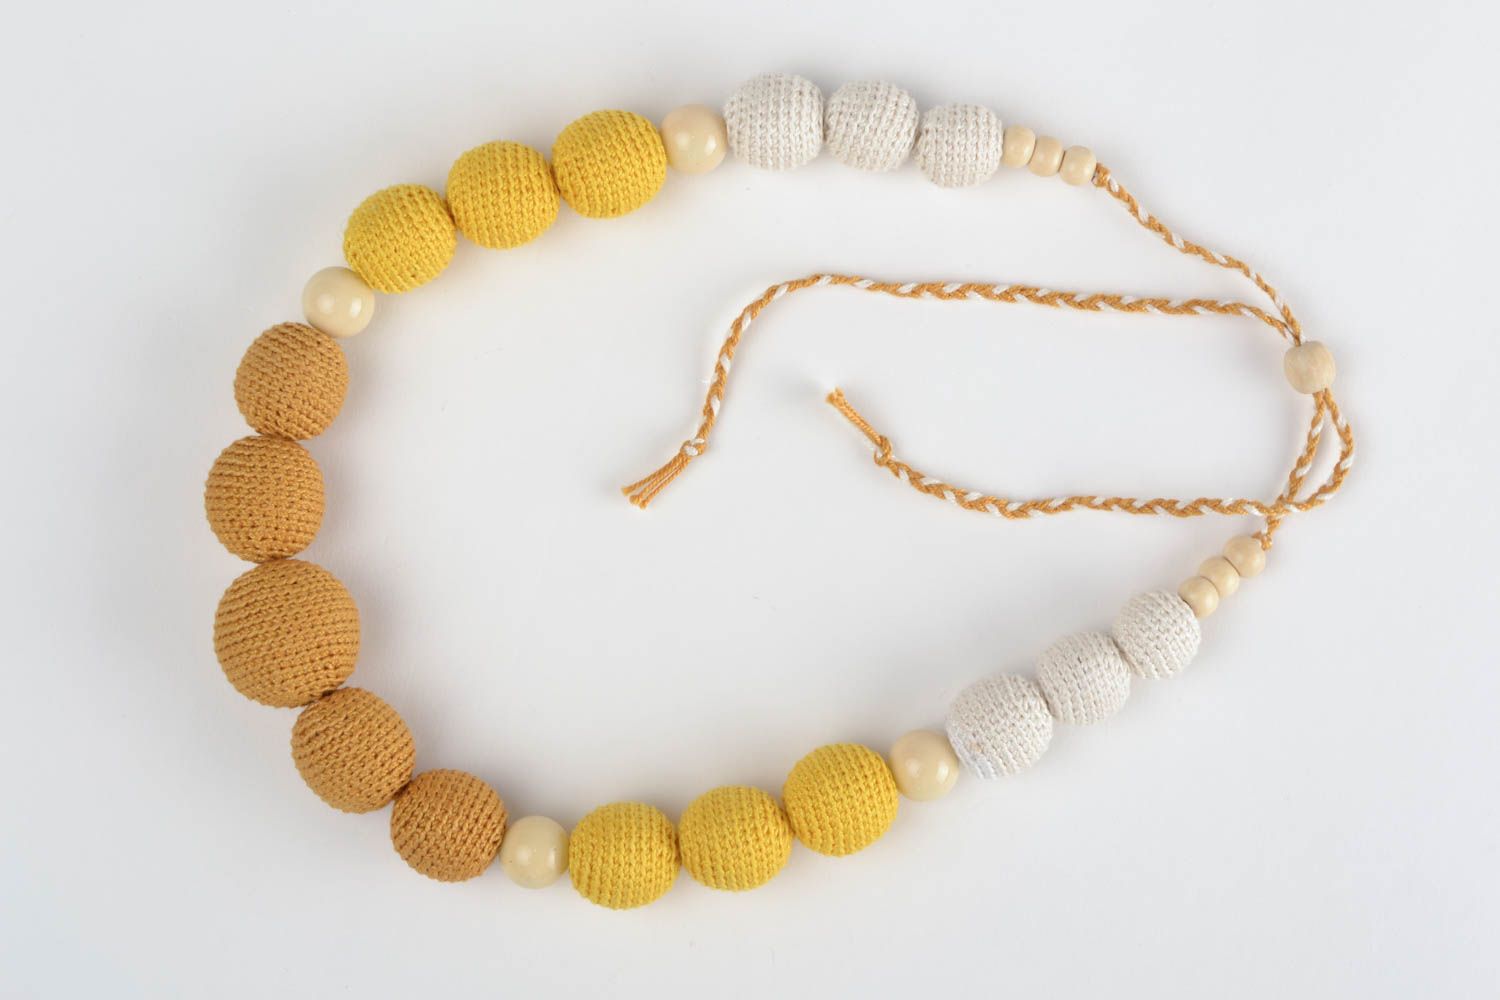 Textil Collier aus Holzperlen gelb weiß schön stilvoll Handarbeit für Frauen foto 2